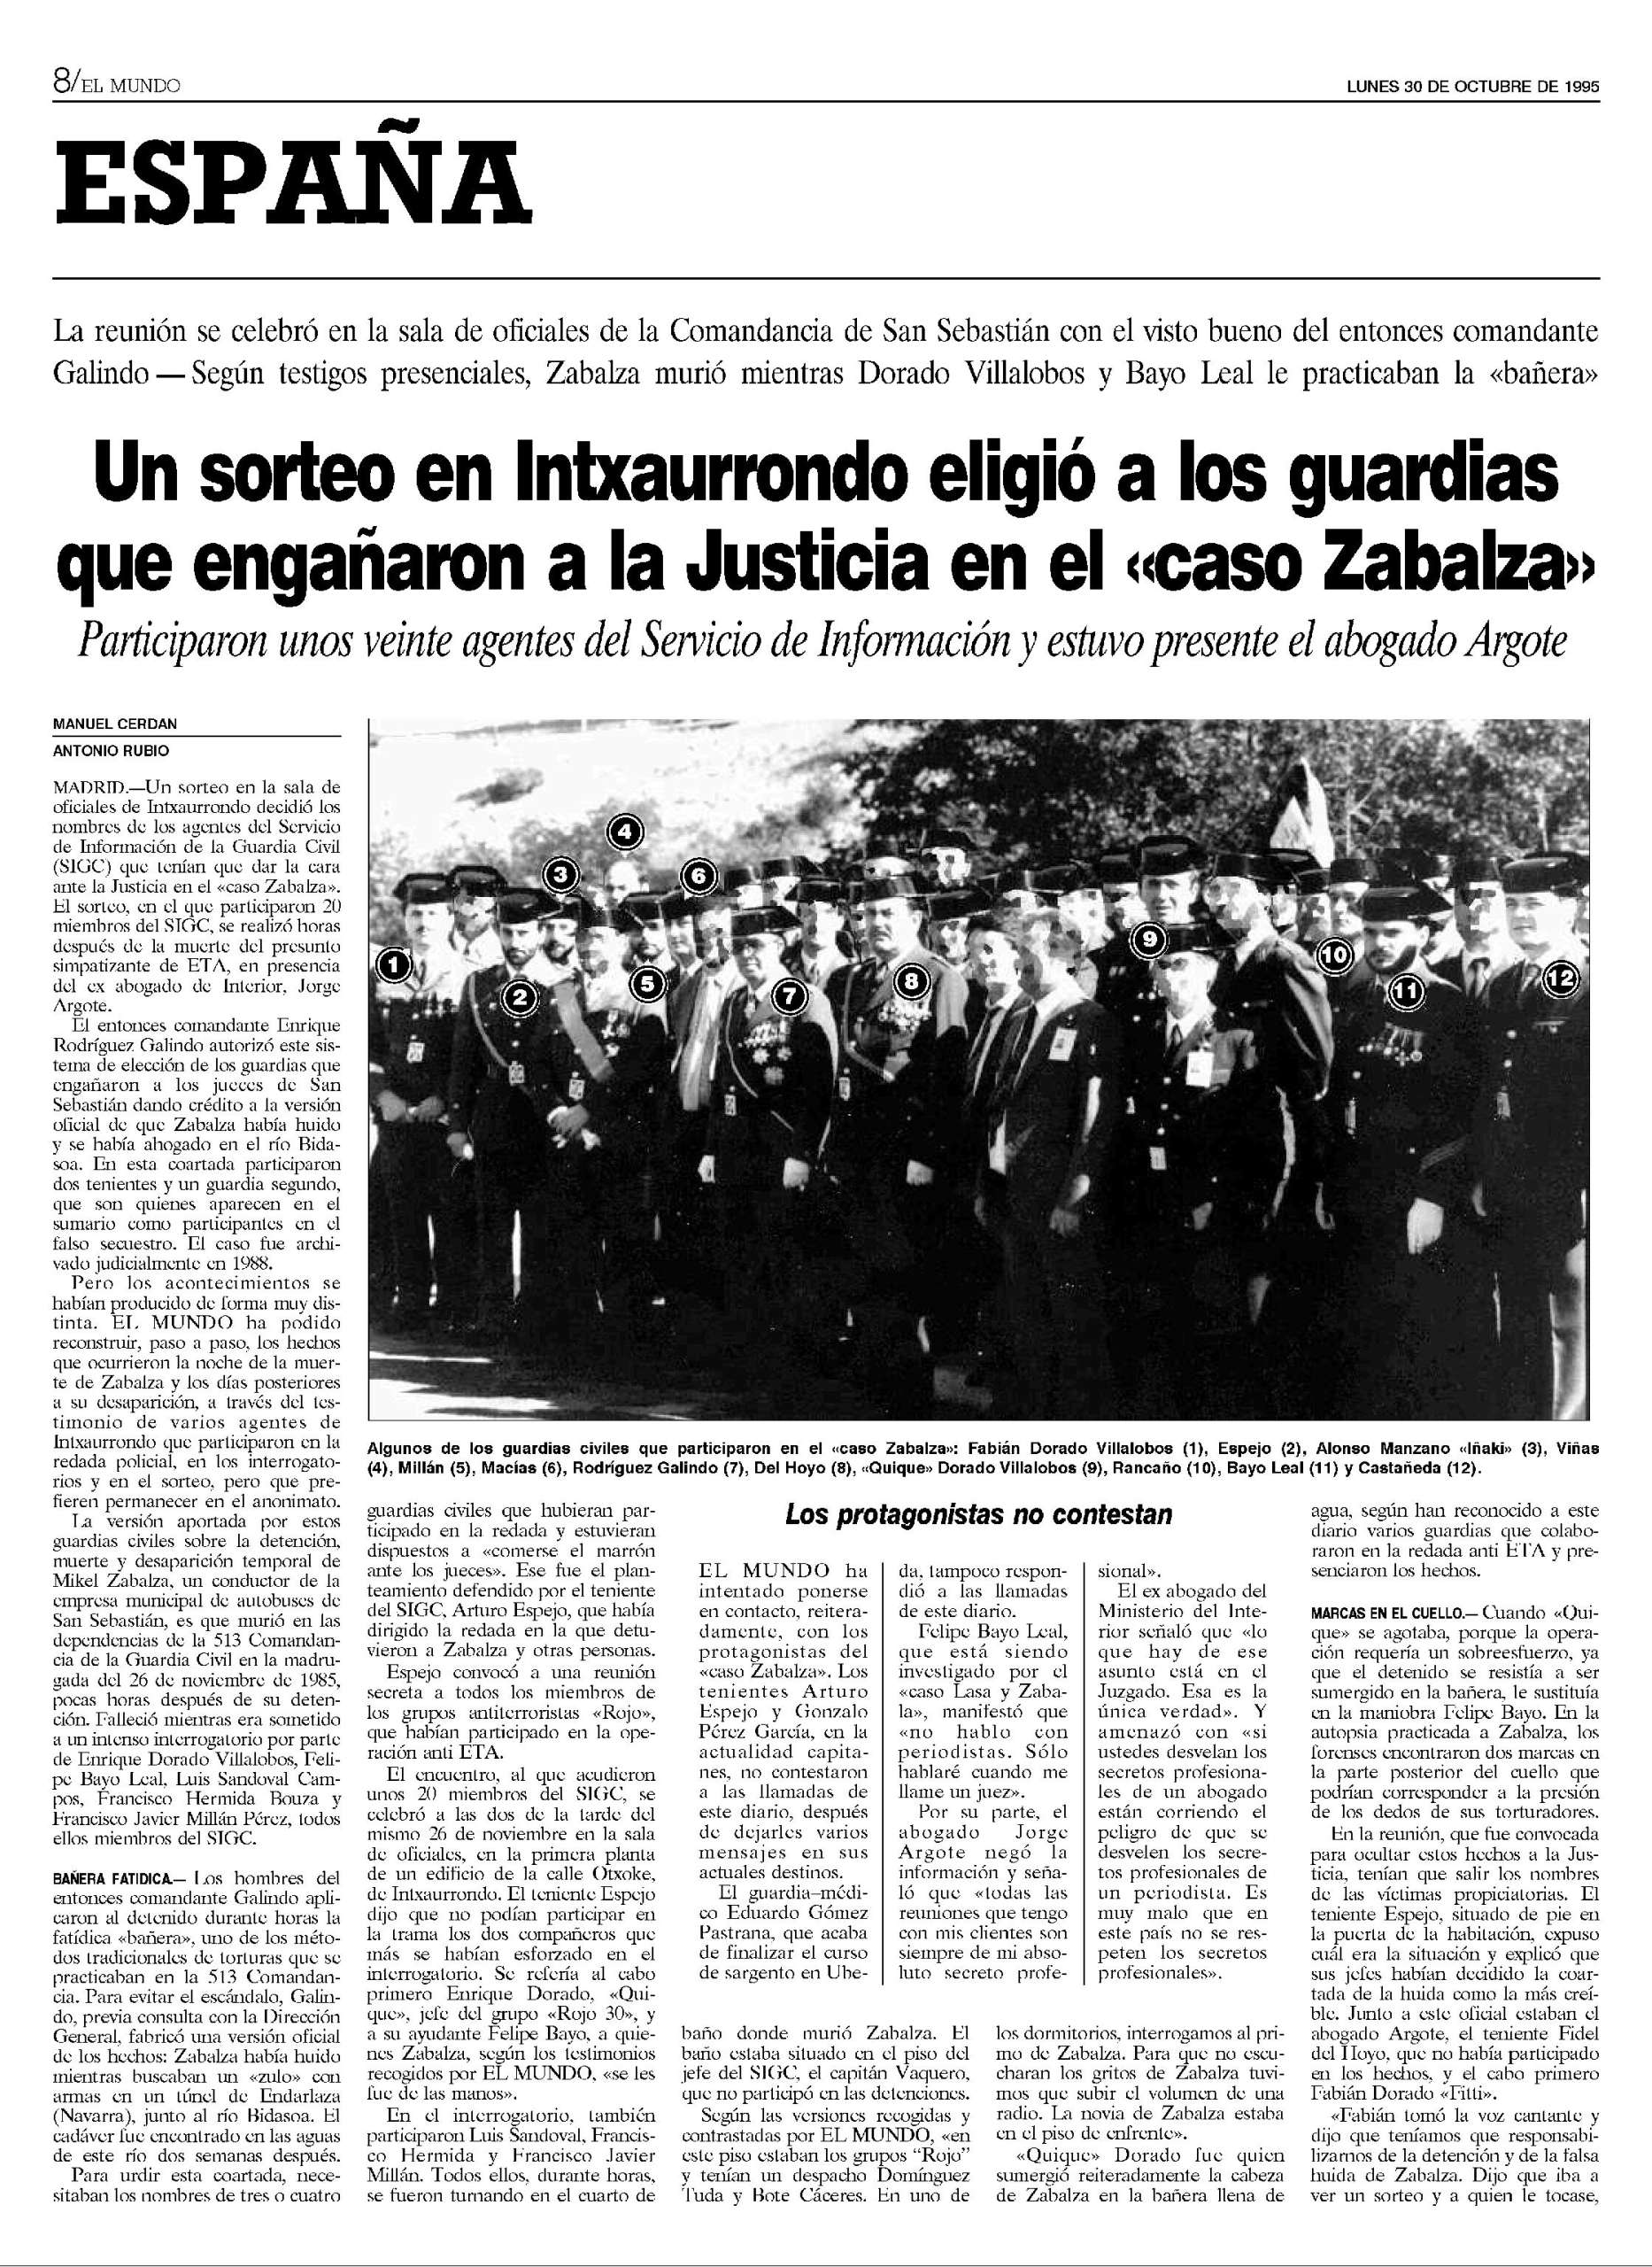 El Mundo publicó el 30 de octubre de 1995 que hubo un sorteo en Intxaurrondo para elegir a los guardias que engañaron a la Justicia en el caso Zabalza